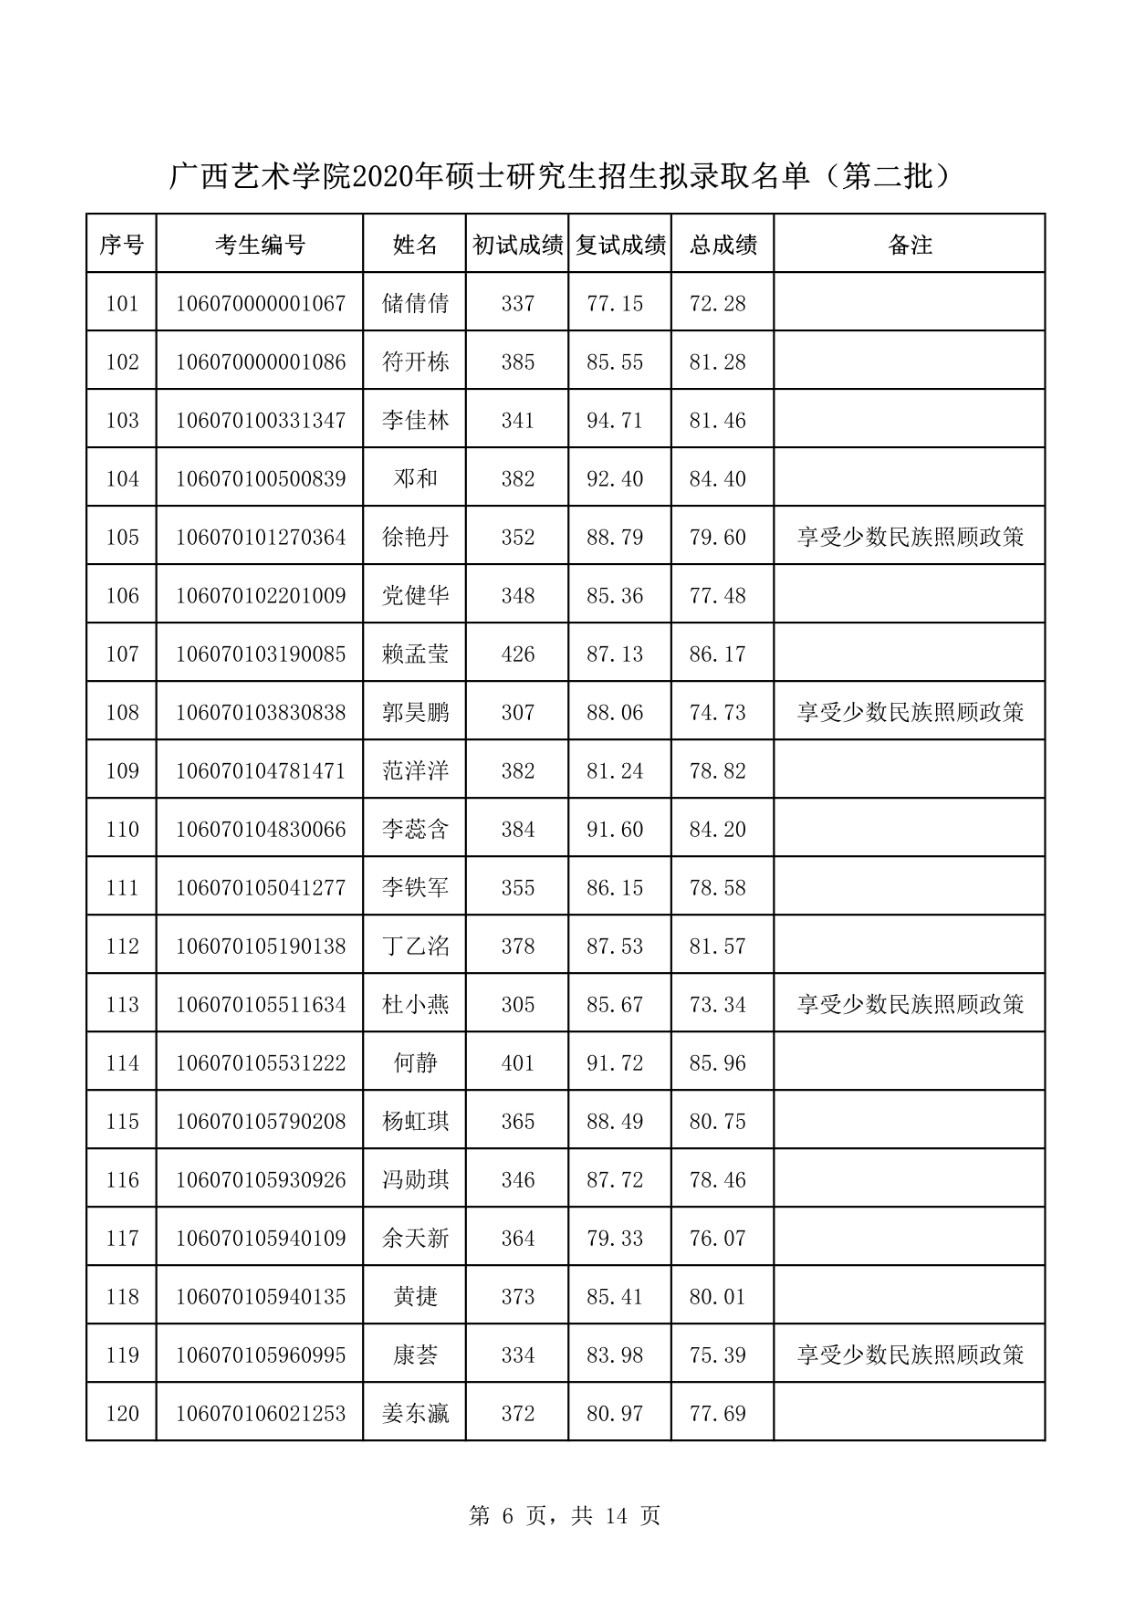 2020年广西艺术学院全日制硕士研究生第二批拟录取名单公示